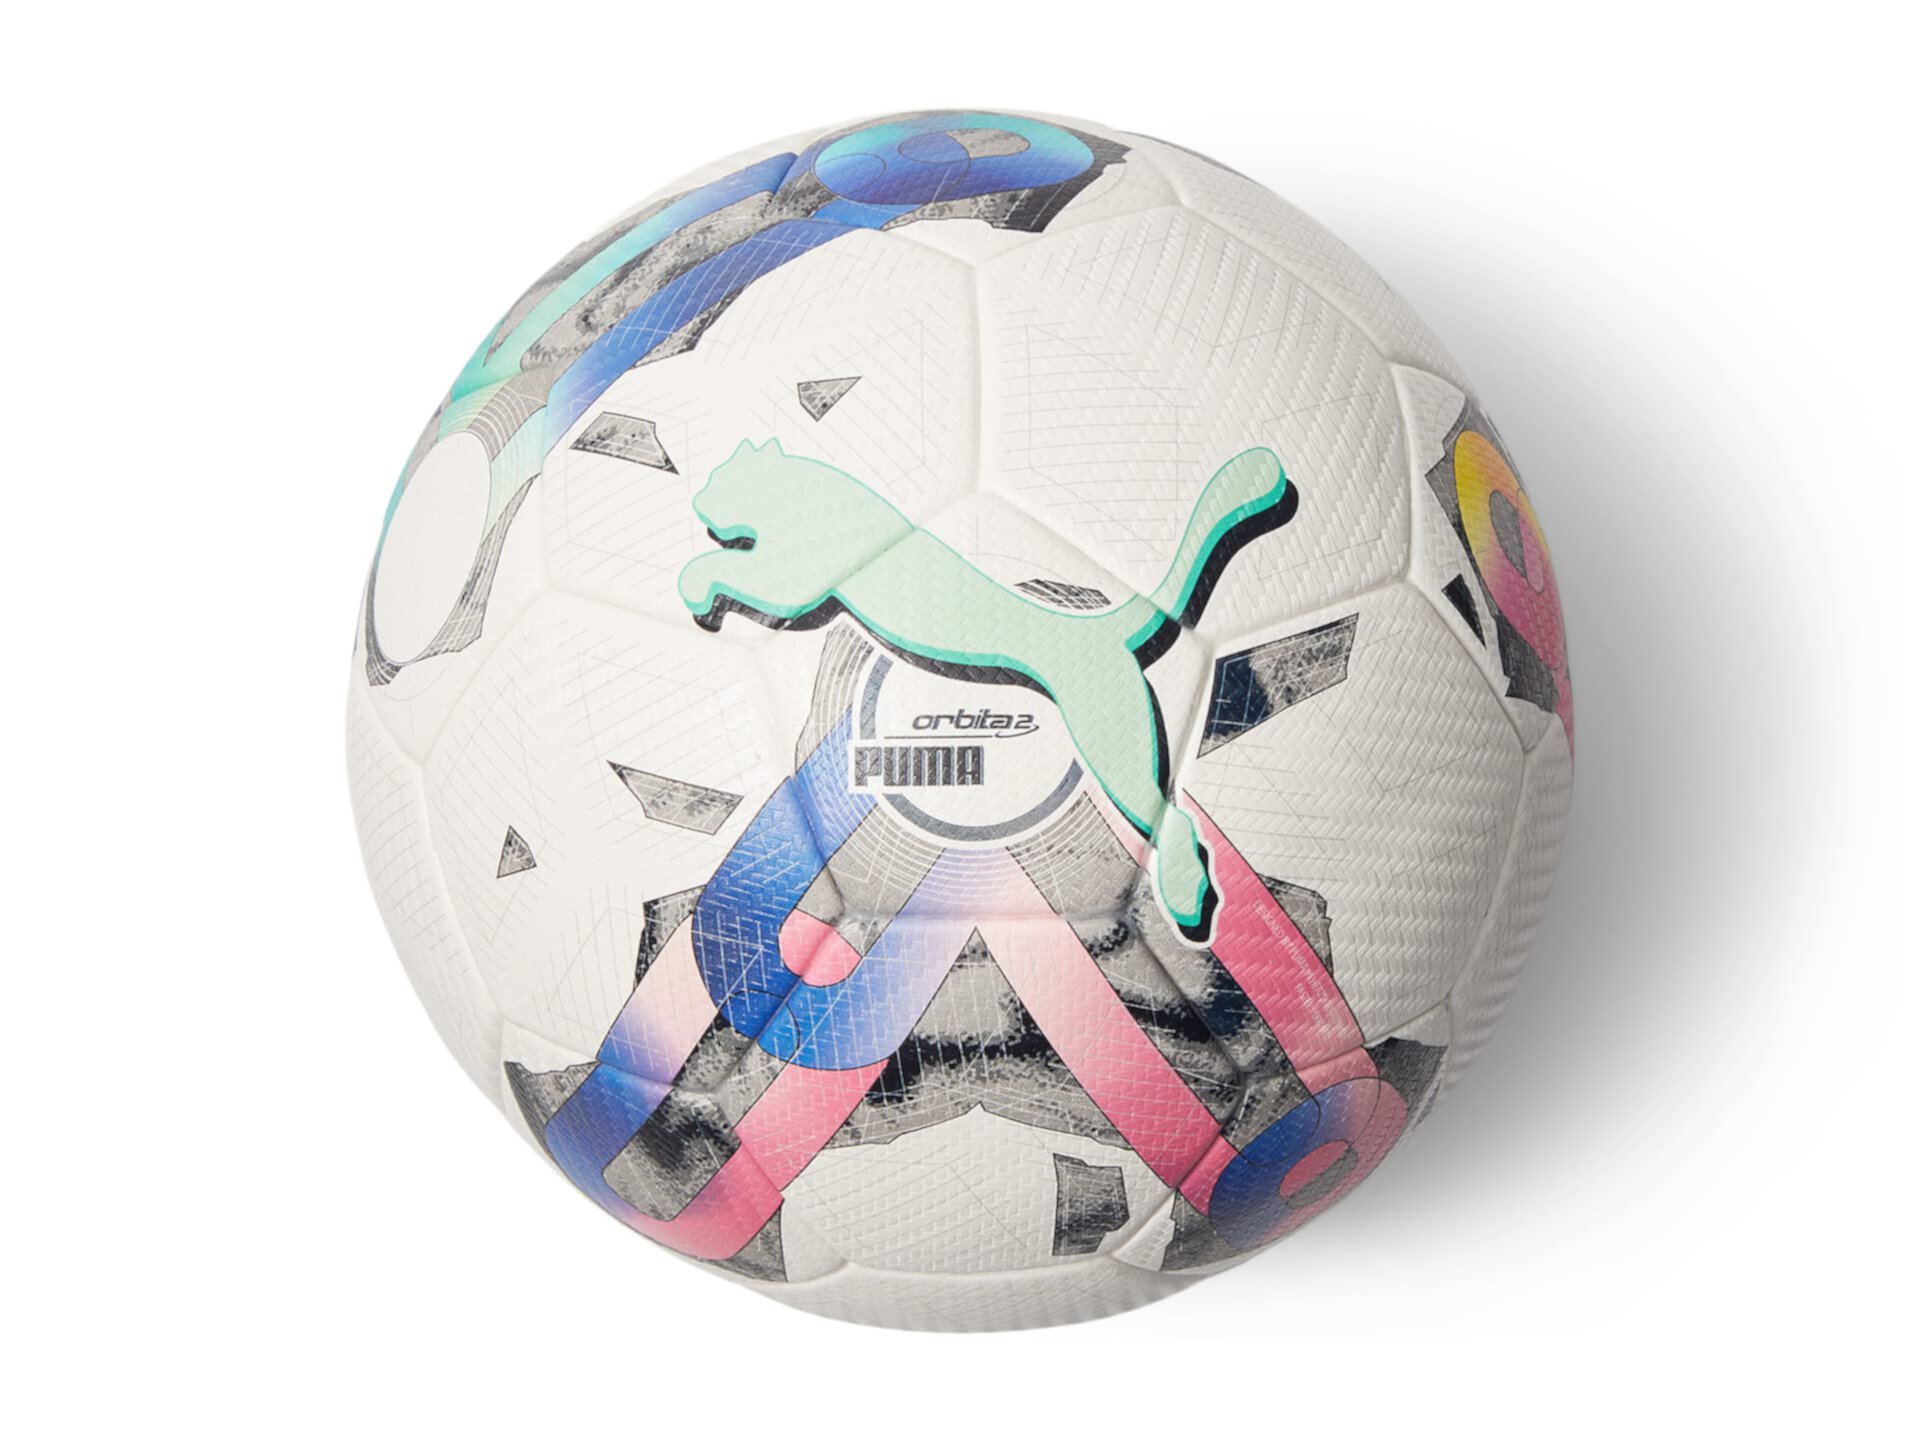 Мяч fifa quality pro. Футбольный мяч Puma laliga1 adrenalina. Мяч футбольный Puma orbita 3 TB №4 FIFA quality.